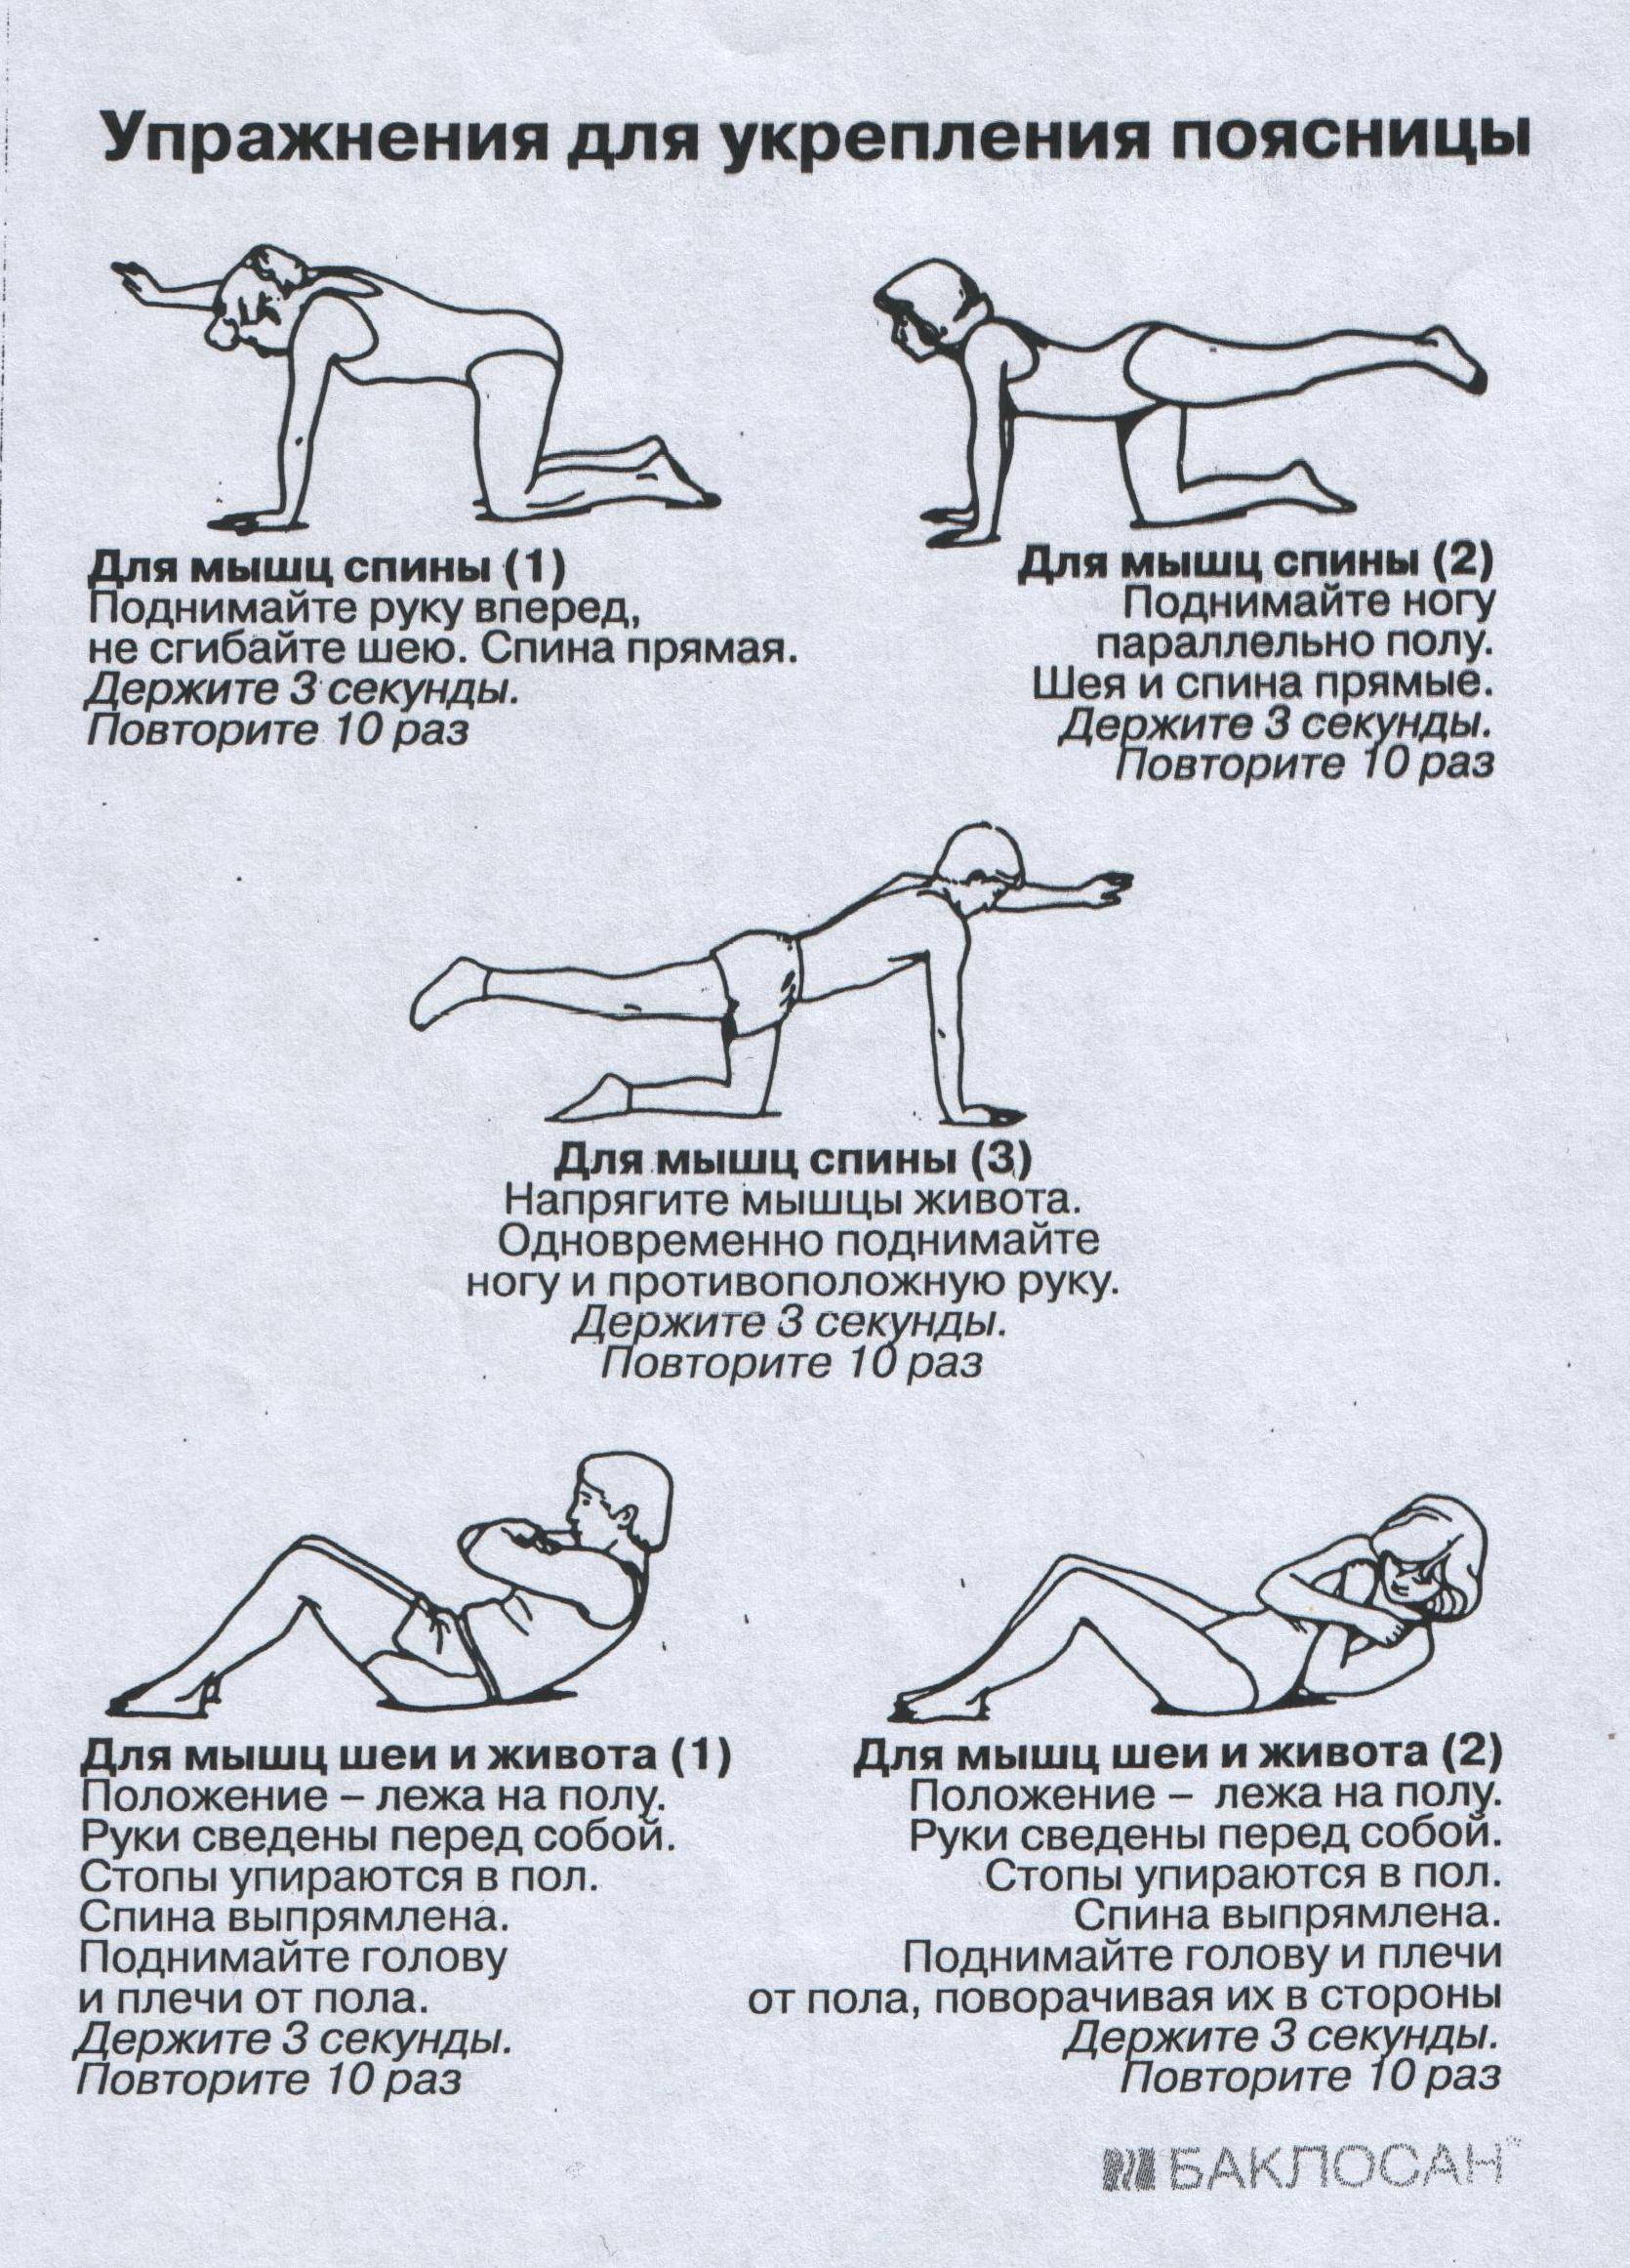 Упражнения для укрепления позвоночника. Комплекс упражнений для укрепления мышц спины. Упражнения на укрепление мышц при болях в спине. 5 Упражнений для укрепления мышц спины. Лечебная гимнастика для укрепления мышц спины ЛФК.